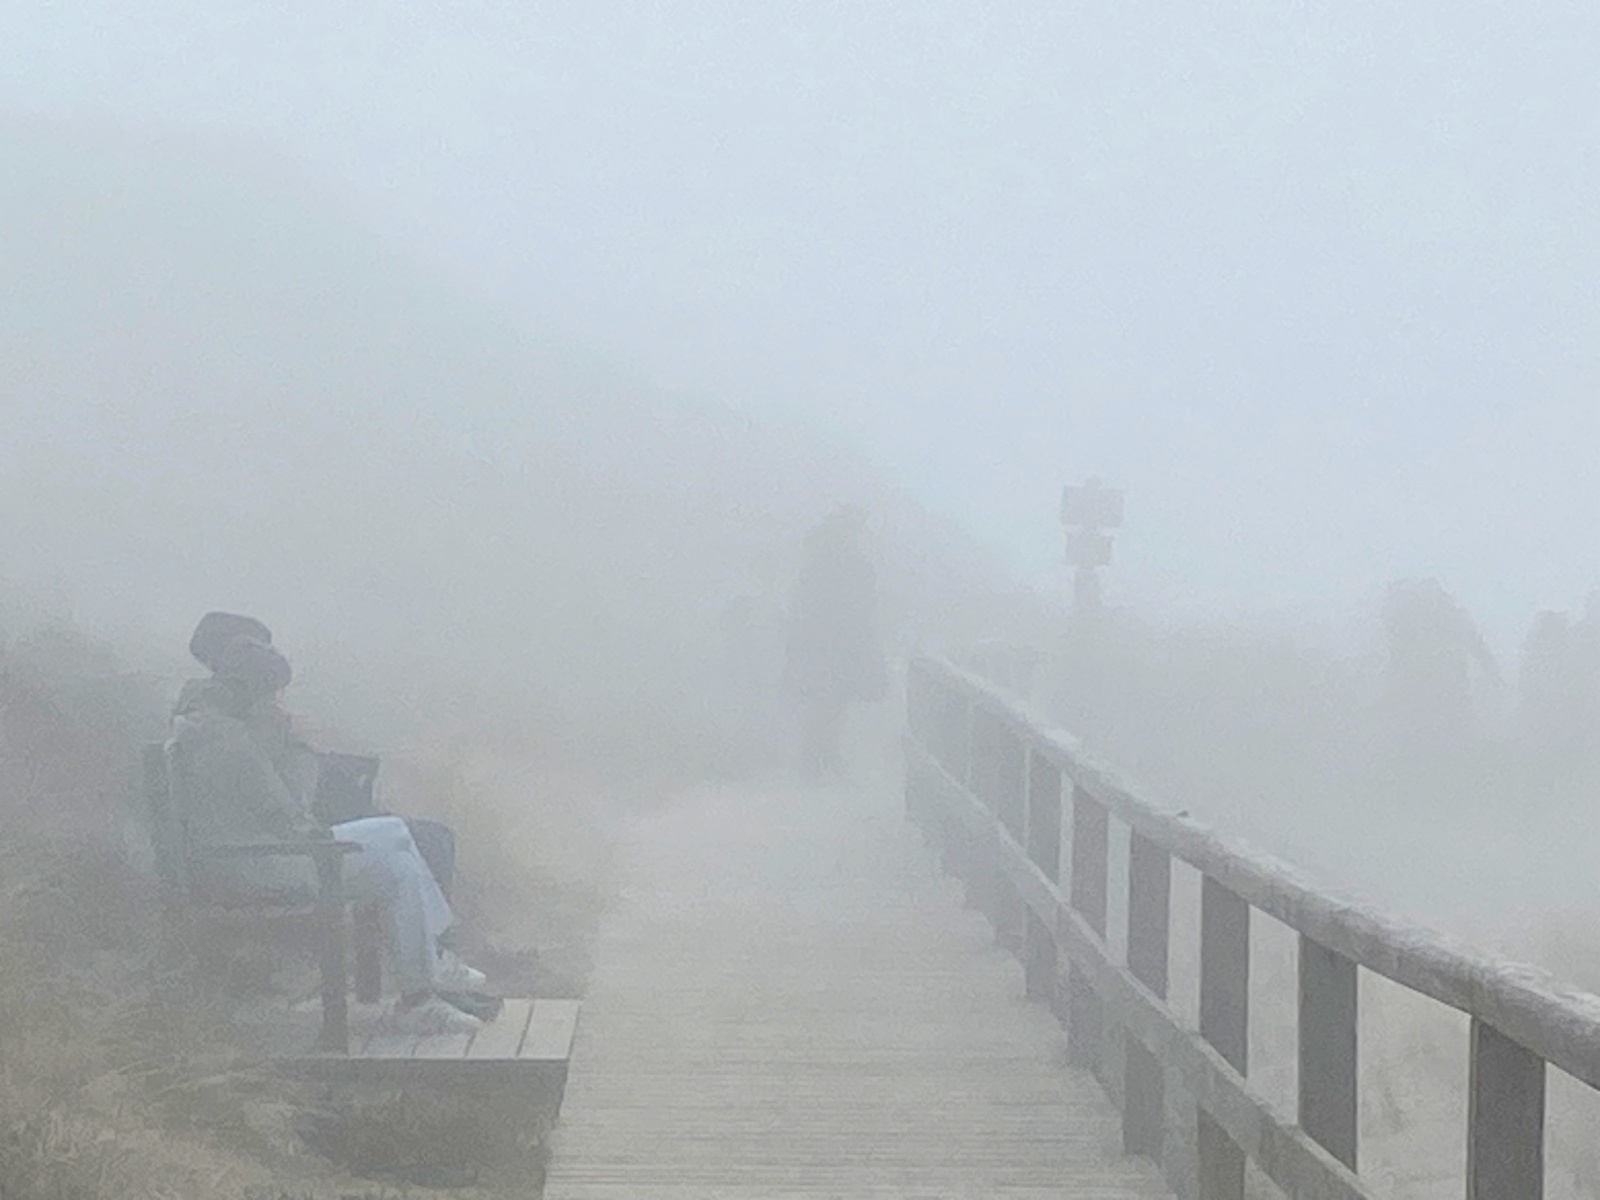 Leute sitzen auf einer Bank im dichten Nebel